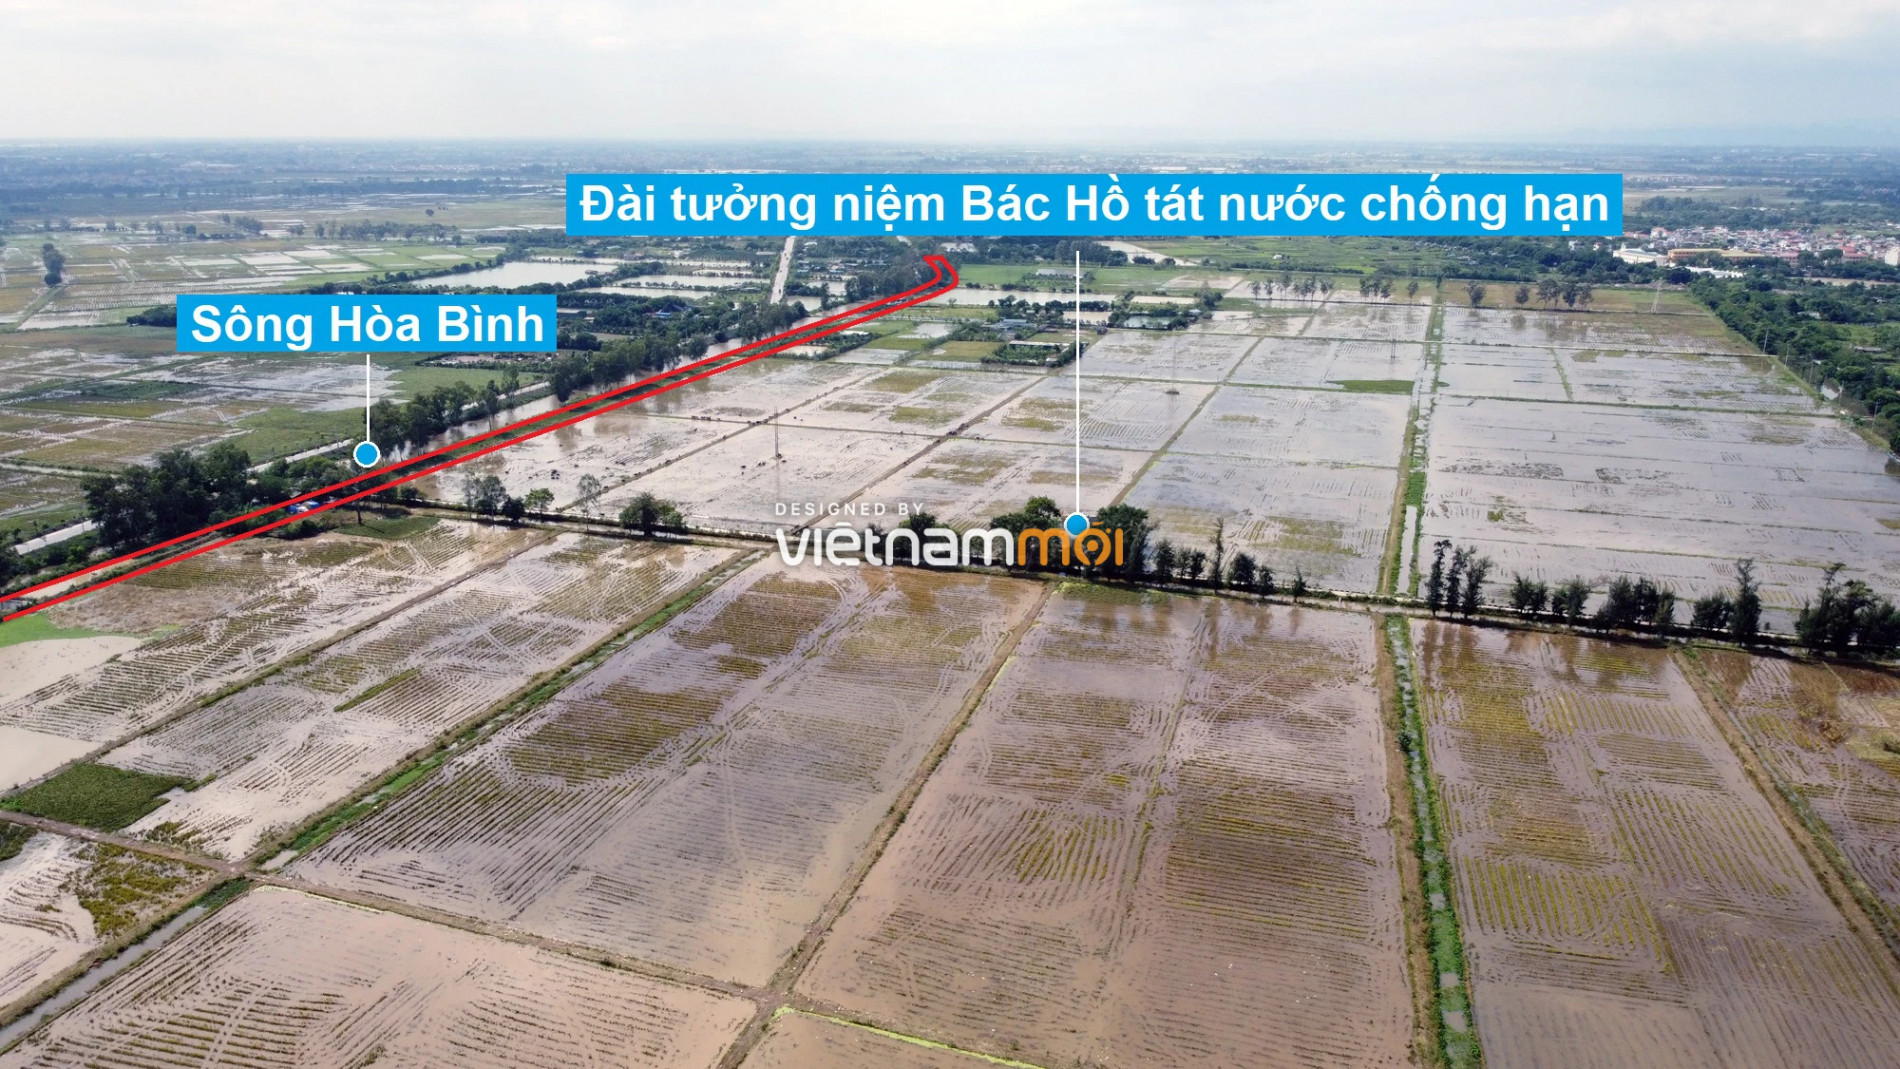 Những khu đất sắp thu hồi để mở đường ở xã Tả Thanh Oai, Thanh Trì, Hà Nội (phần 3) - Ảnh 4.